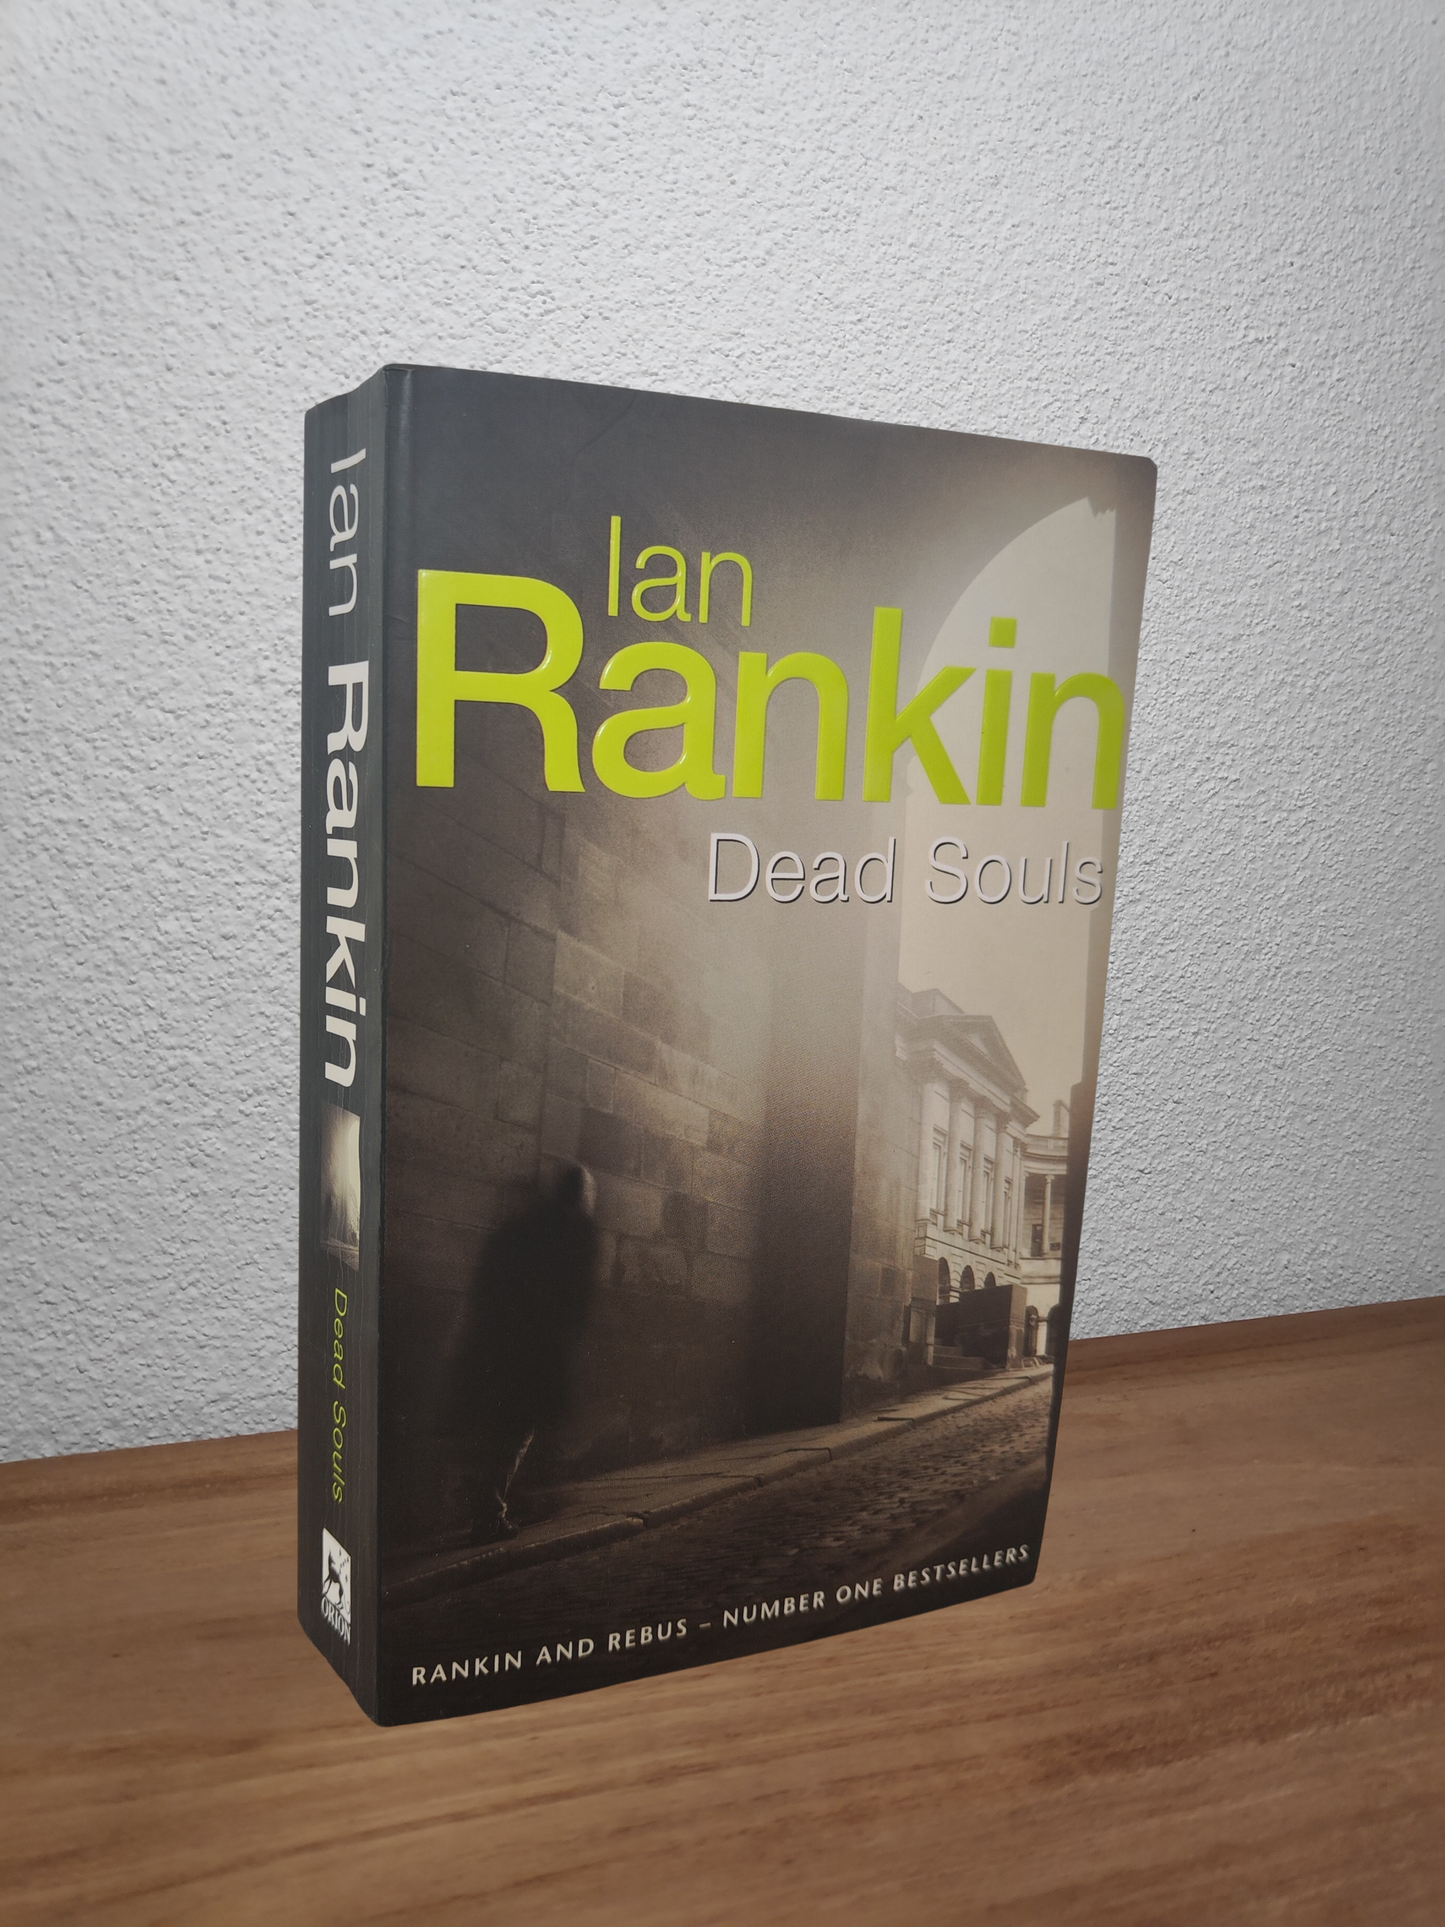 Ian Rankin - Dead Souls (Inspector Rebus #10)